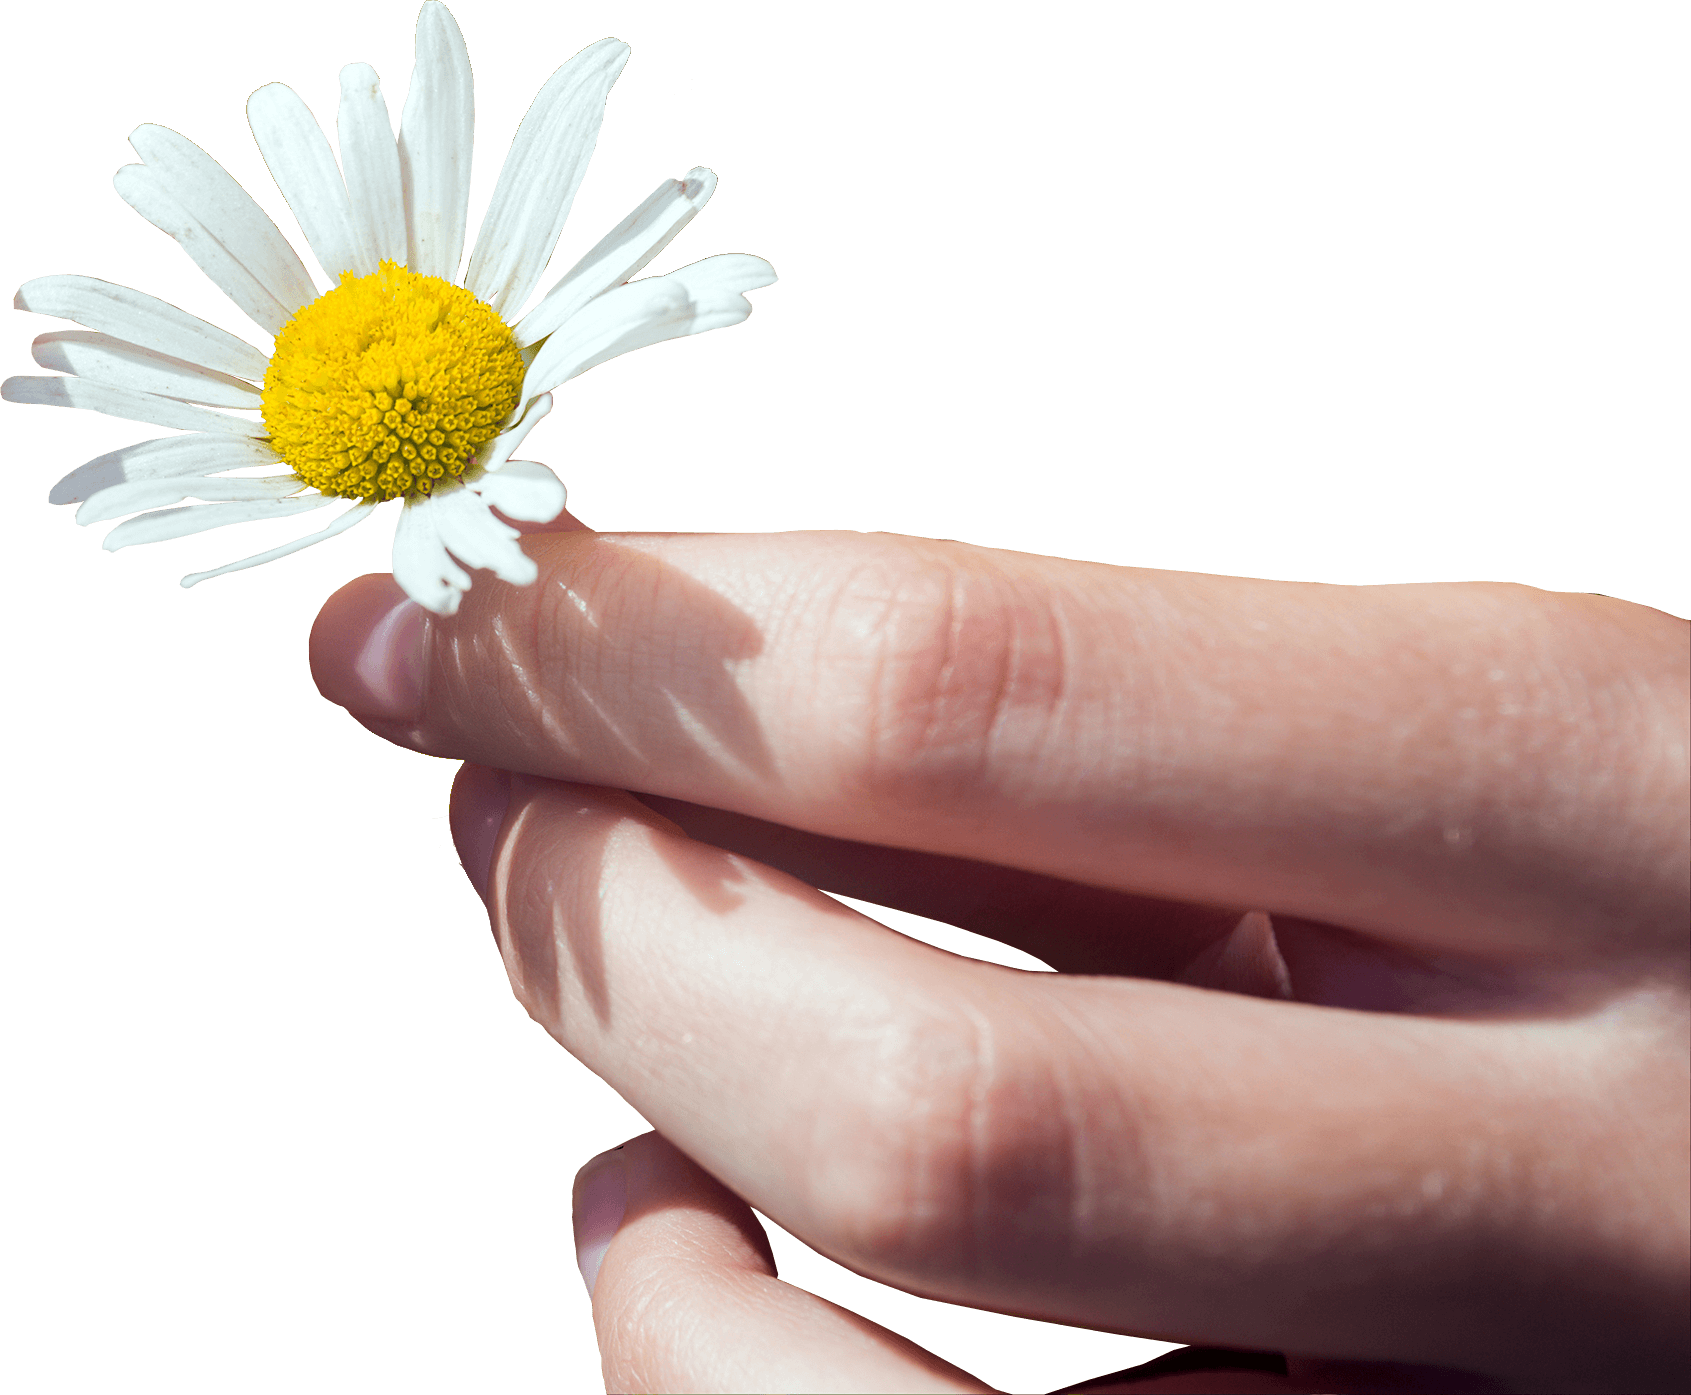 hand holding daisy